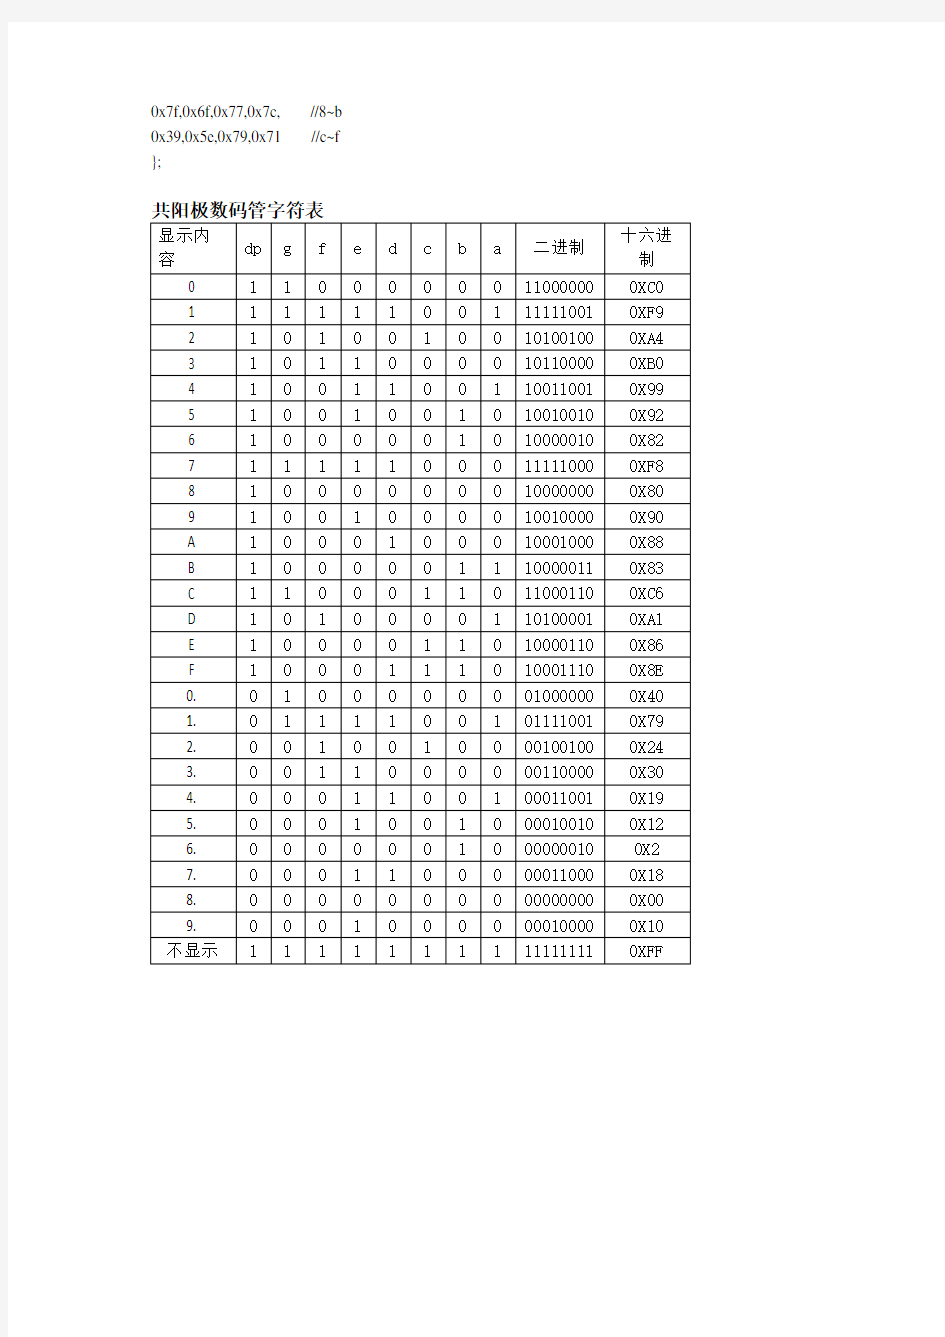 数码管二进制和十六进制字符编码表